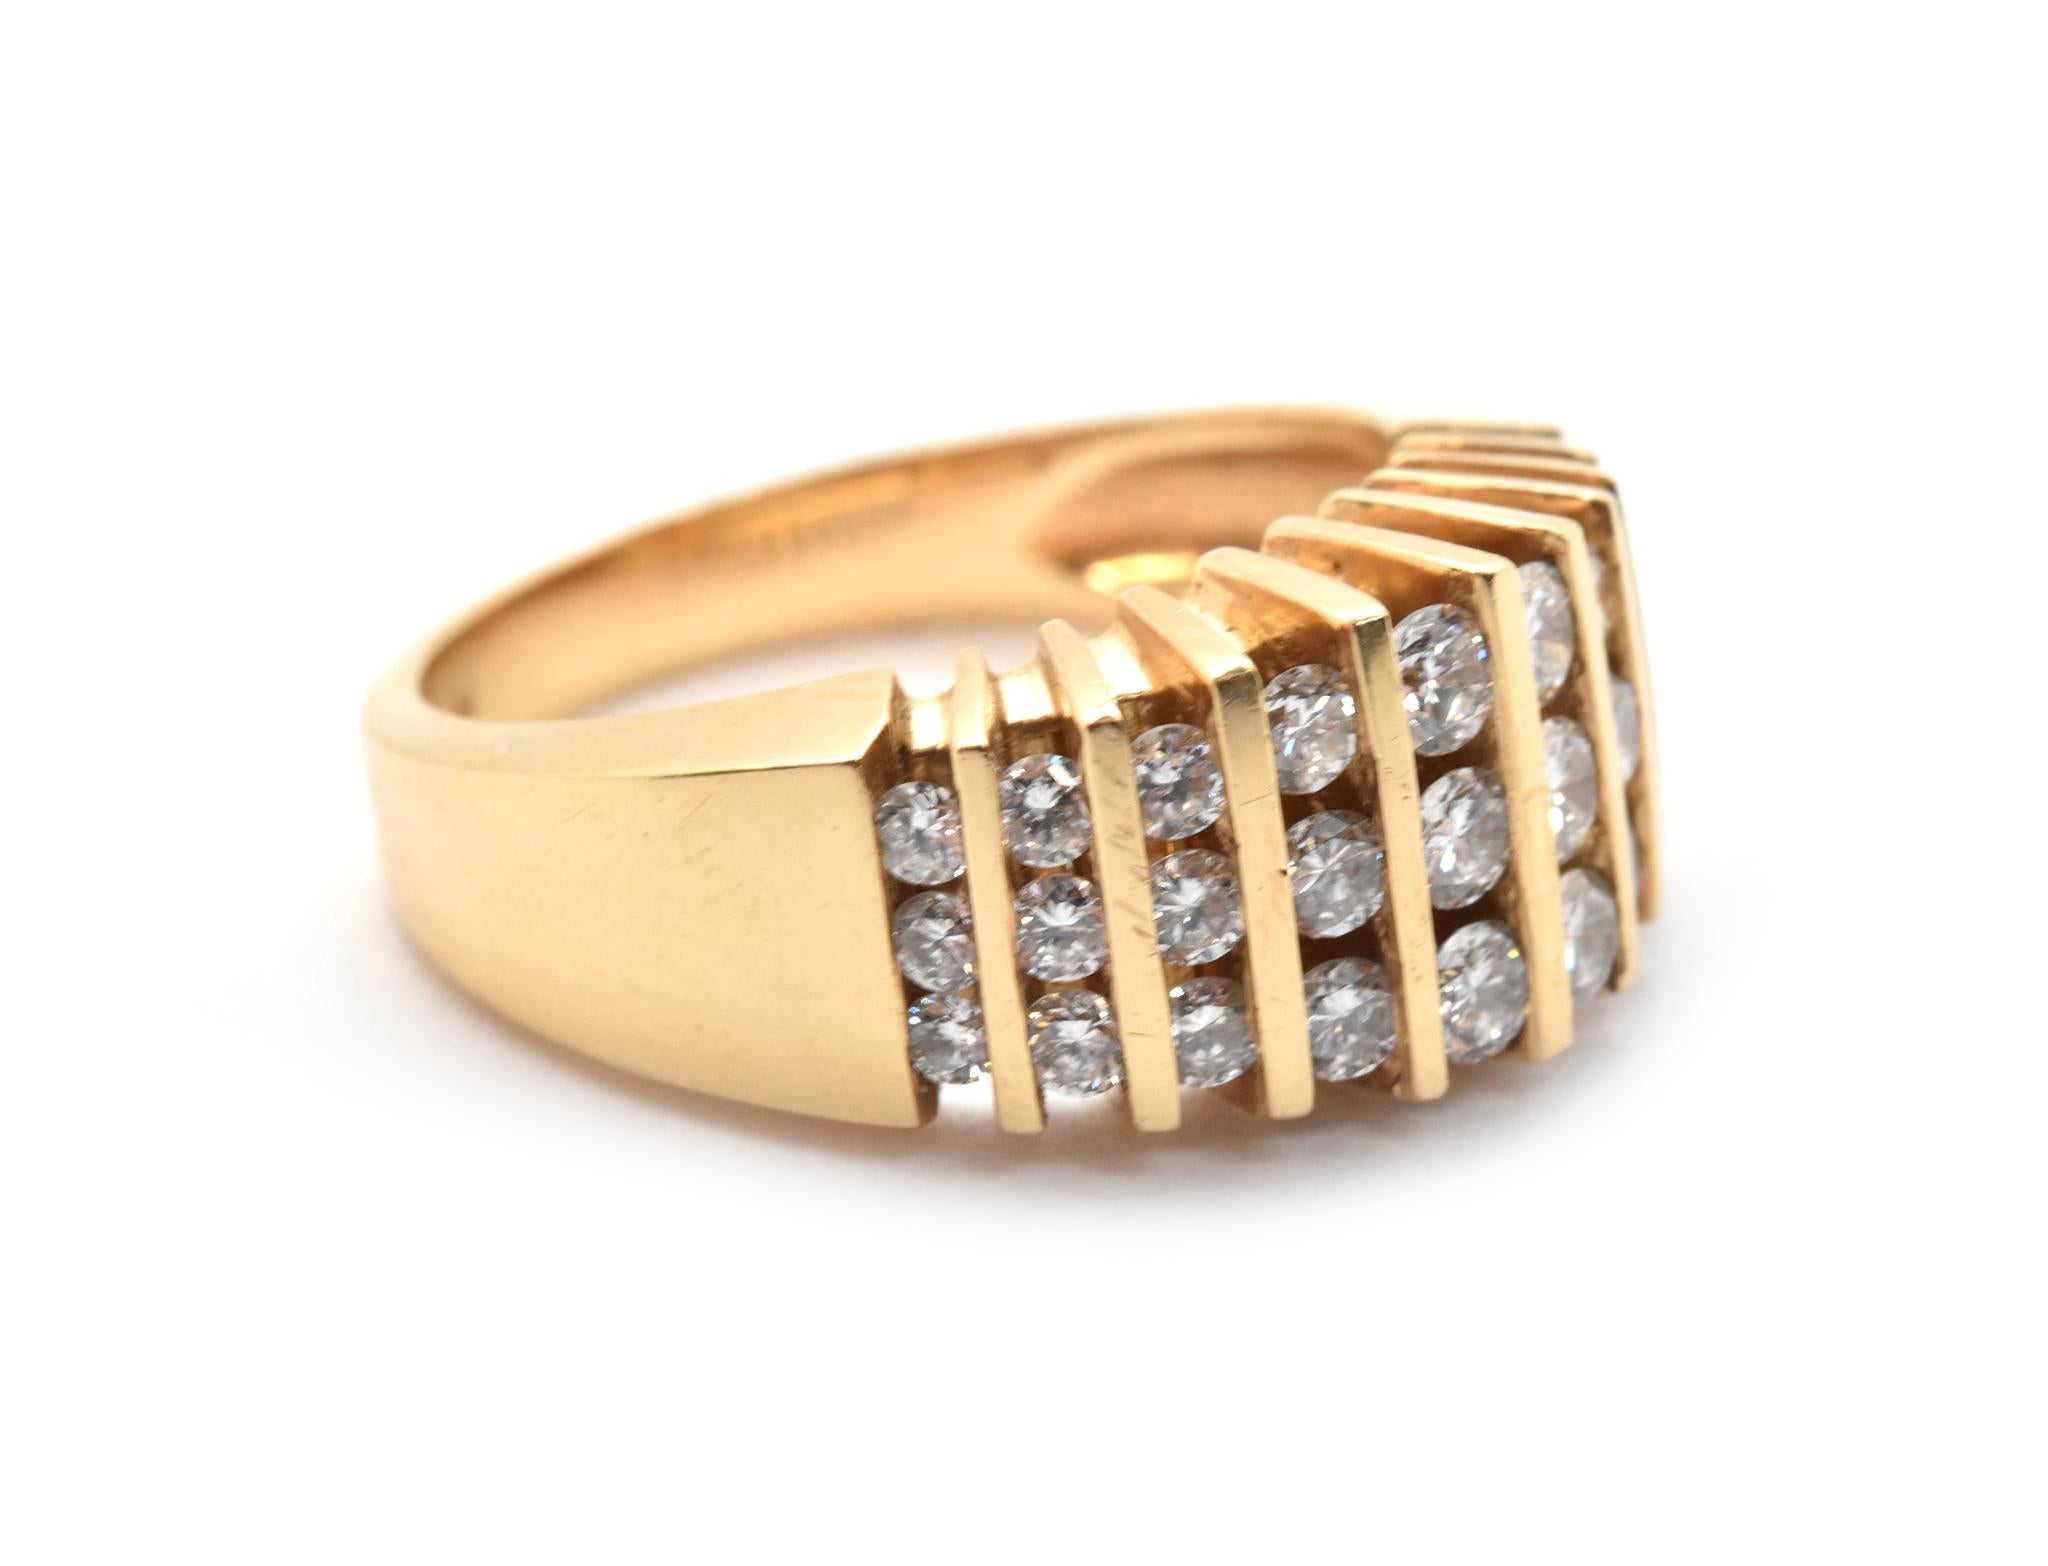 Dieser Ring ist aus massivem 14-karätigem Gelbgold gefertigt, und auf der Vorderseite des Rings befinden sich 10 Reihen runder Diamanten. Die Diamanten haben ein Gesamtgewicht von 0,75 Karat und sind in der Farbe G-H und in der Reinheit SI